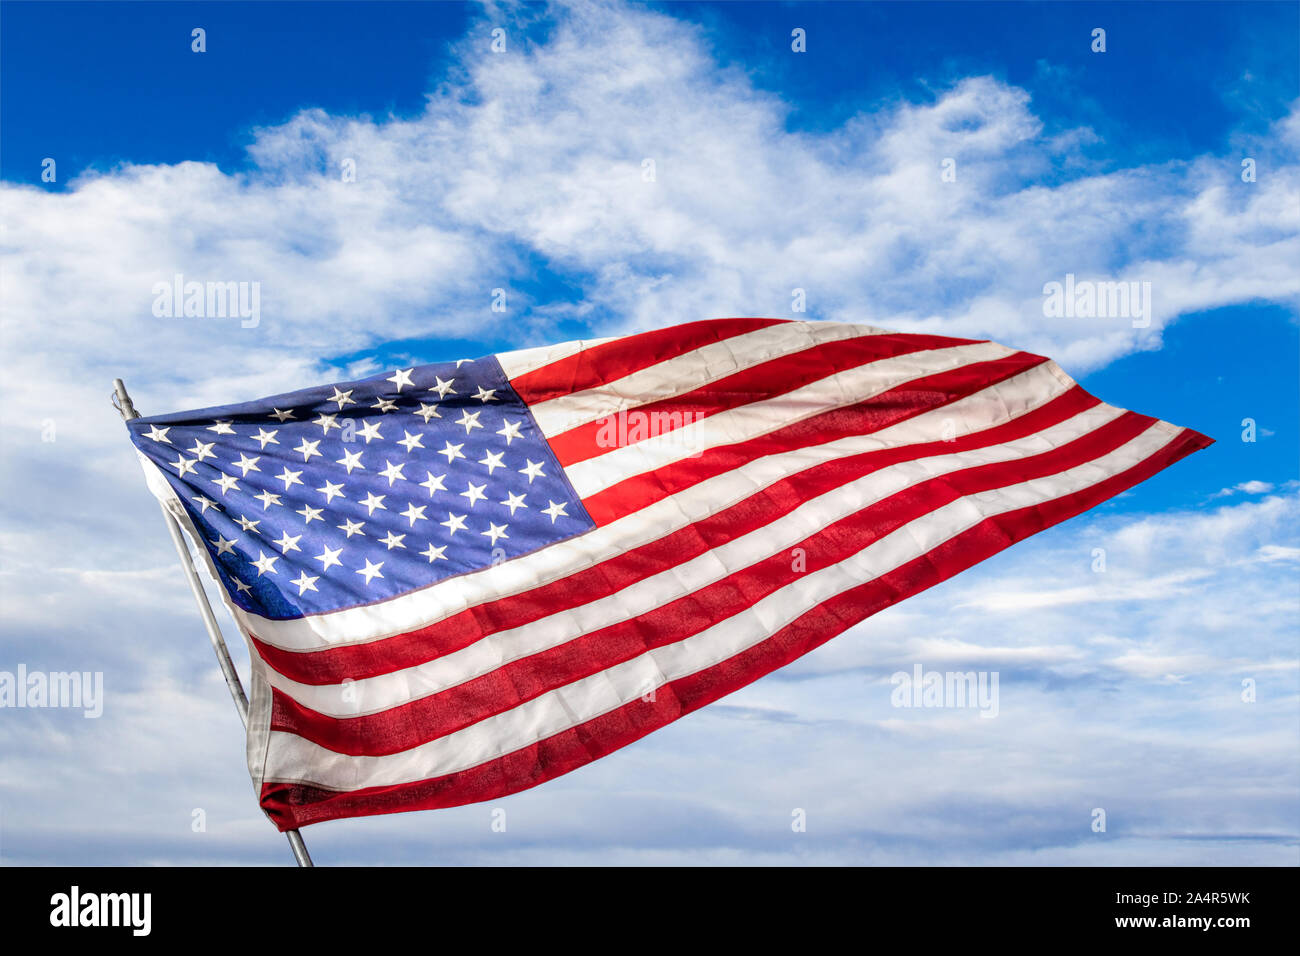 Stars and Stripes USA drapeaux contre un fond de ciel bleu. Concept de la Journée des anciens combattants de patriotisme, mémorial de guerre ou d'événements. Banque D'Images